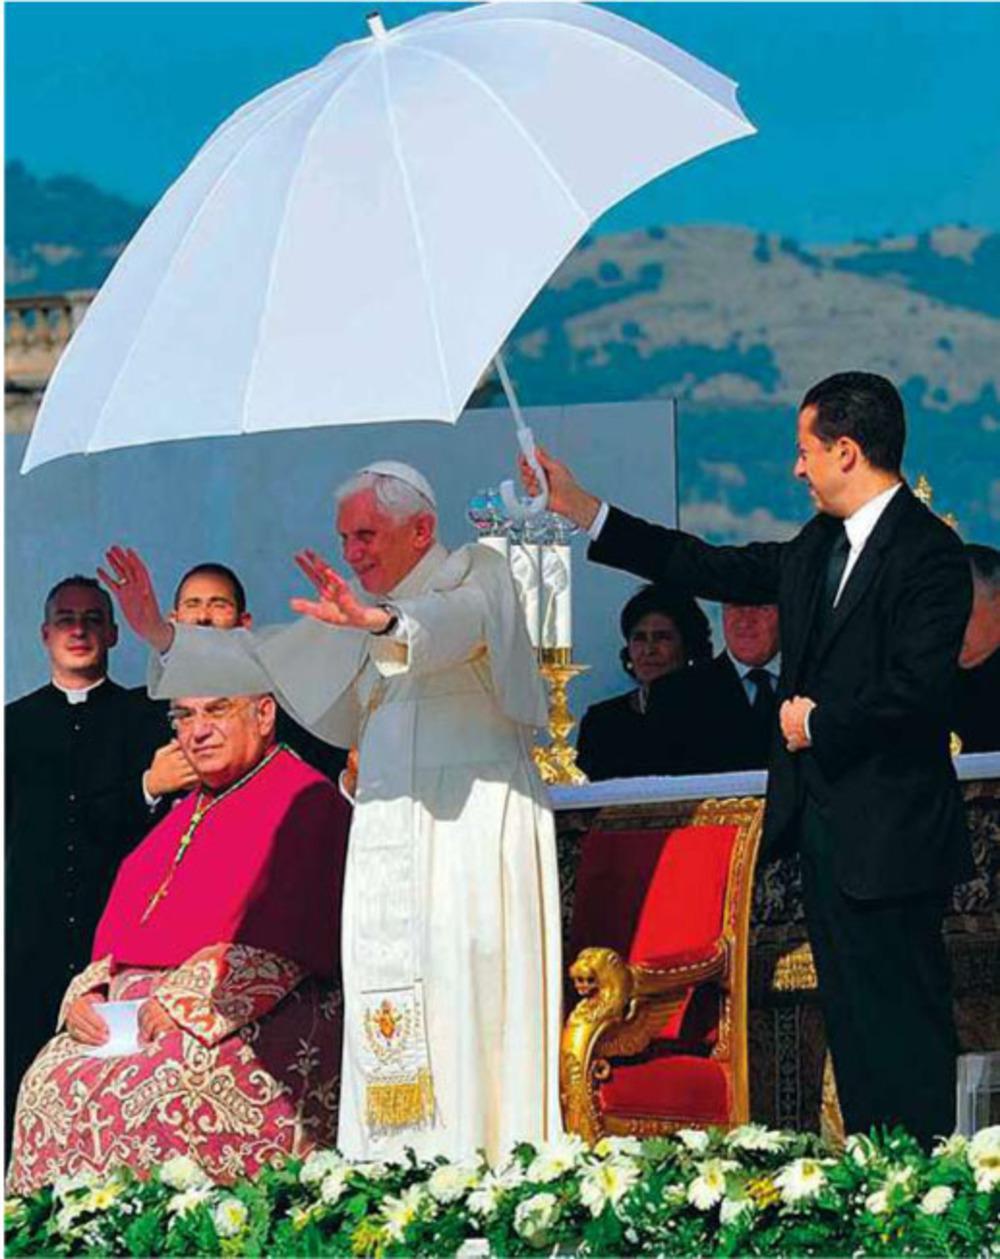 Paolo Gabriele, de butler van Benedictus XVI (hier links van hem), stond bekend als een modelbediende.